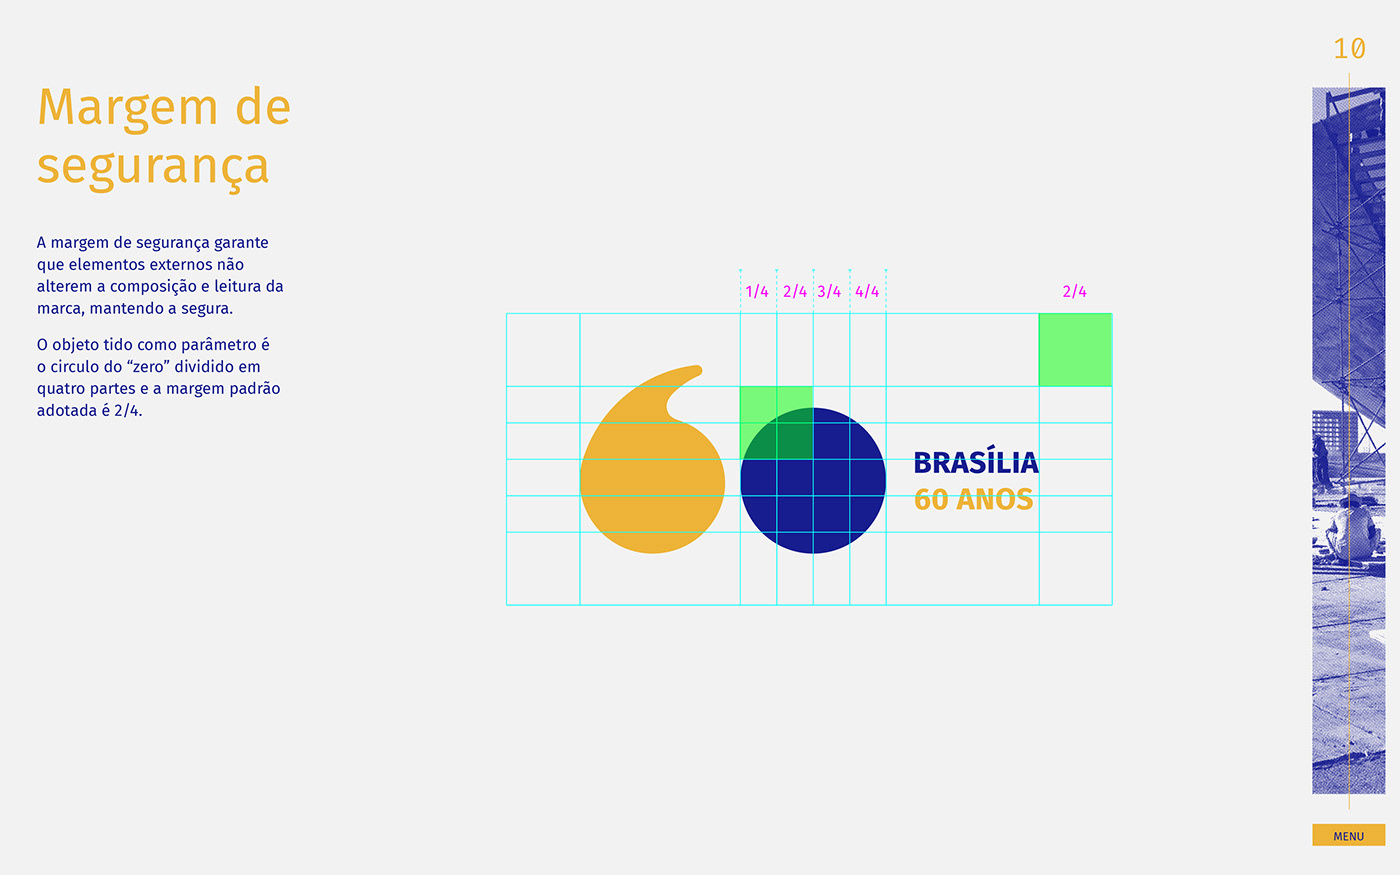 marca brand brasilia manual de identidade logo 60 anos Icon